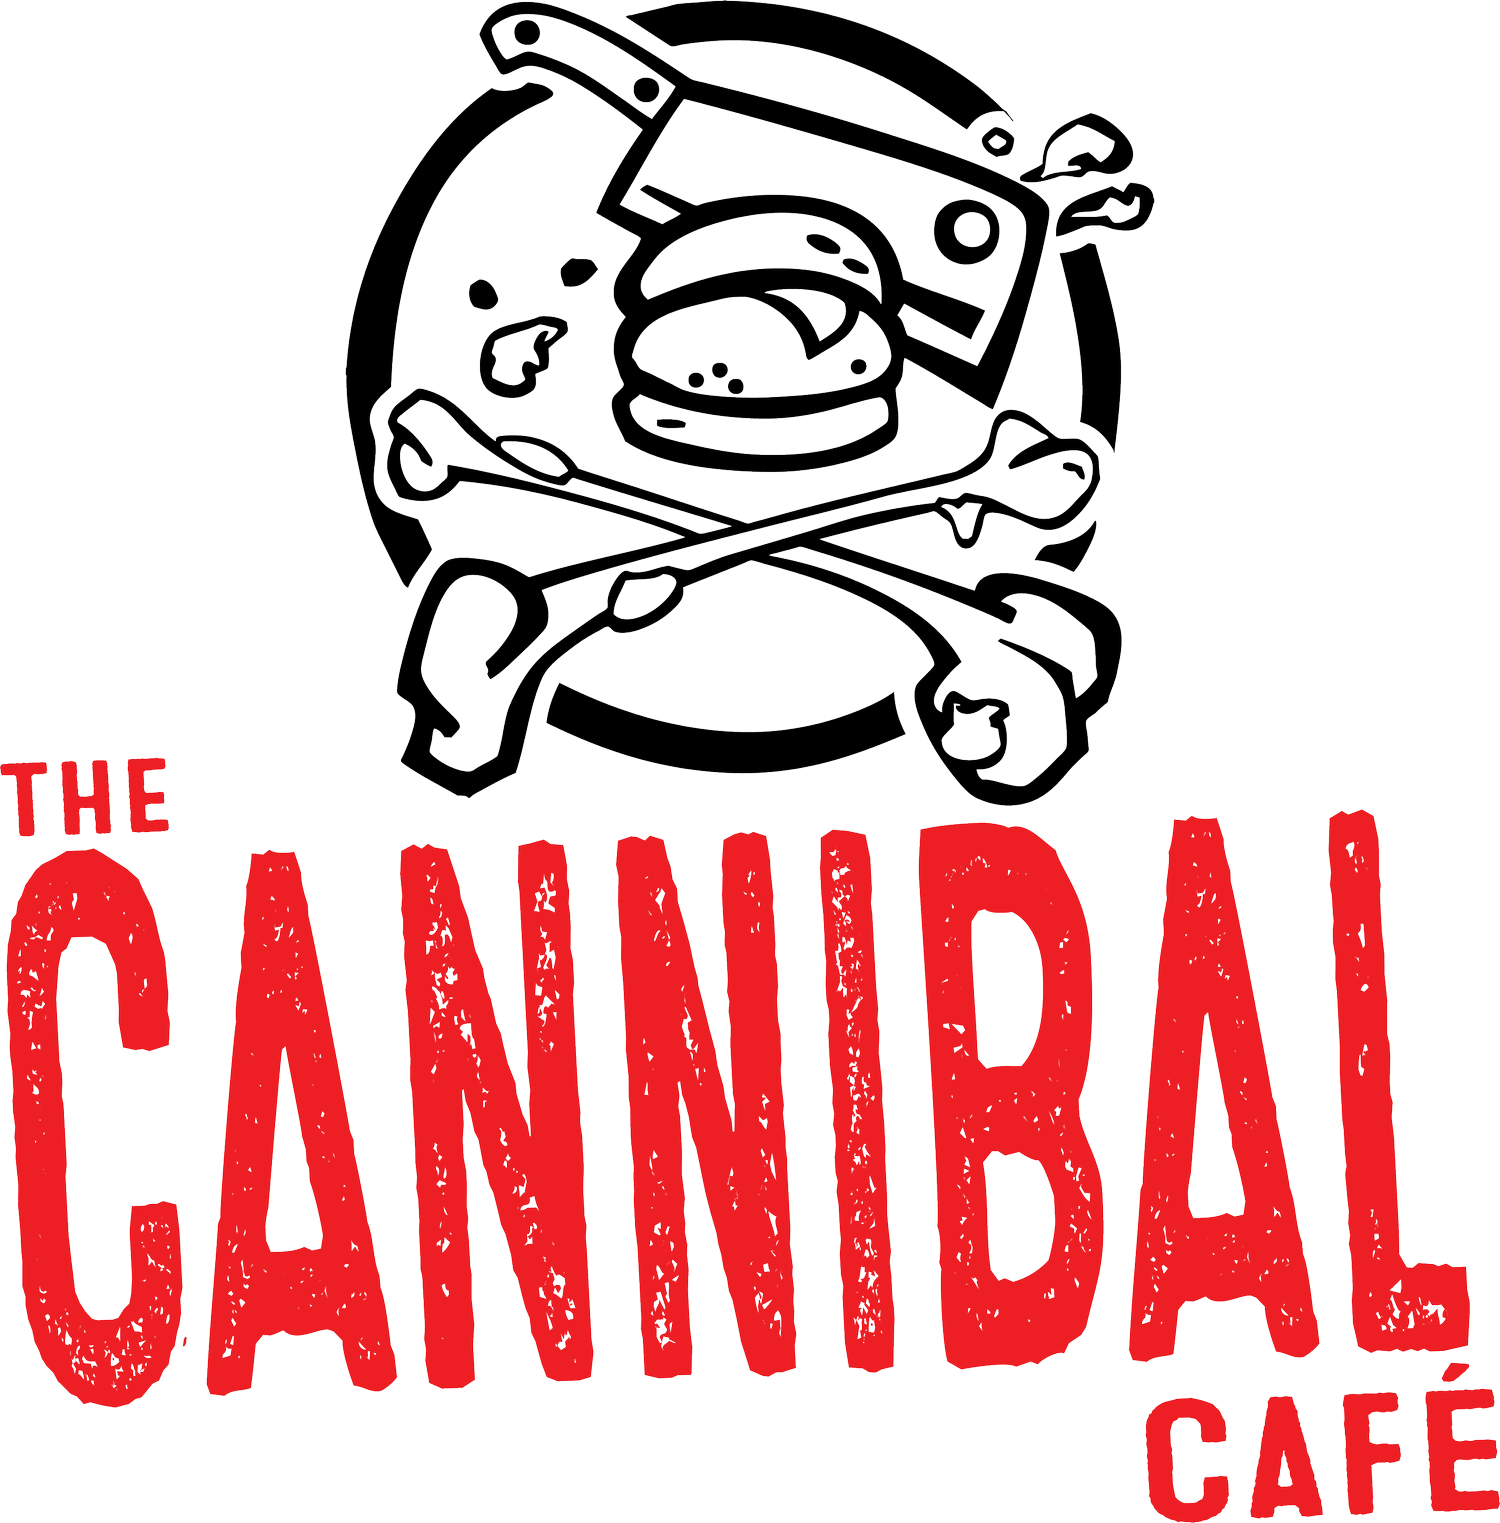 The Cannibal Café